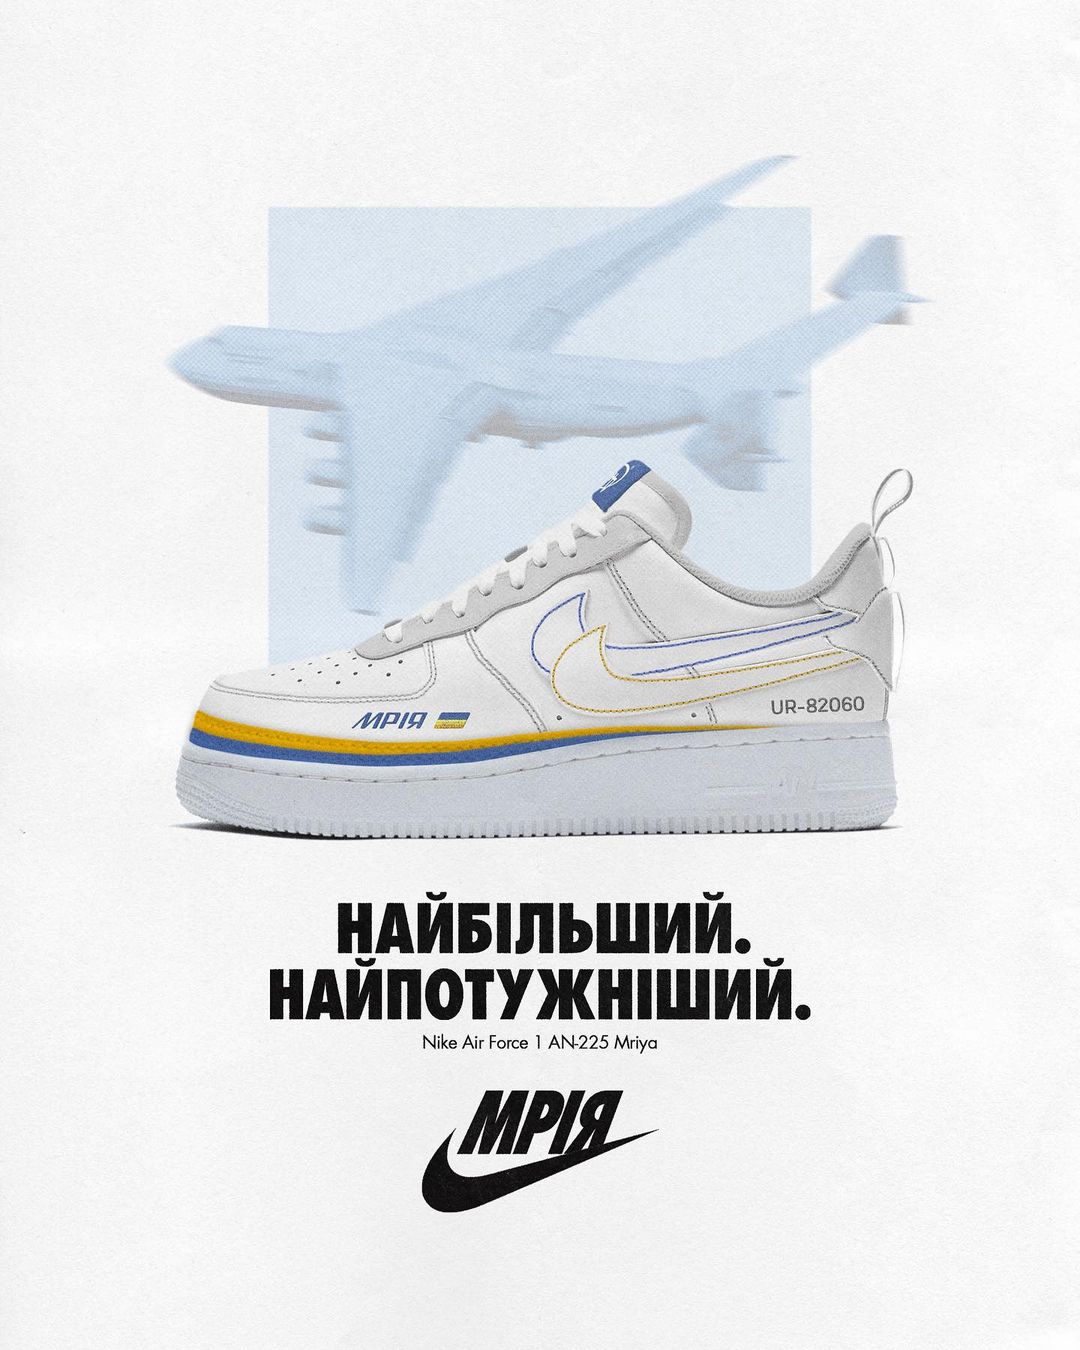 Украинский дизайнер придумал кроссовки Nike с самолетом 